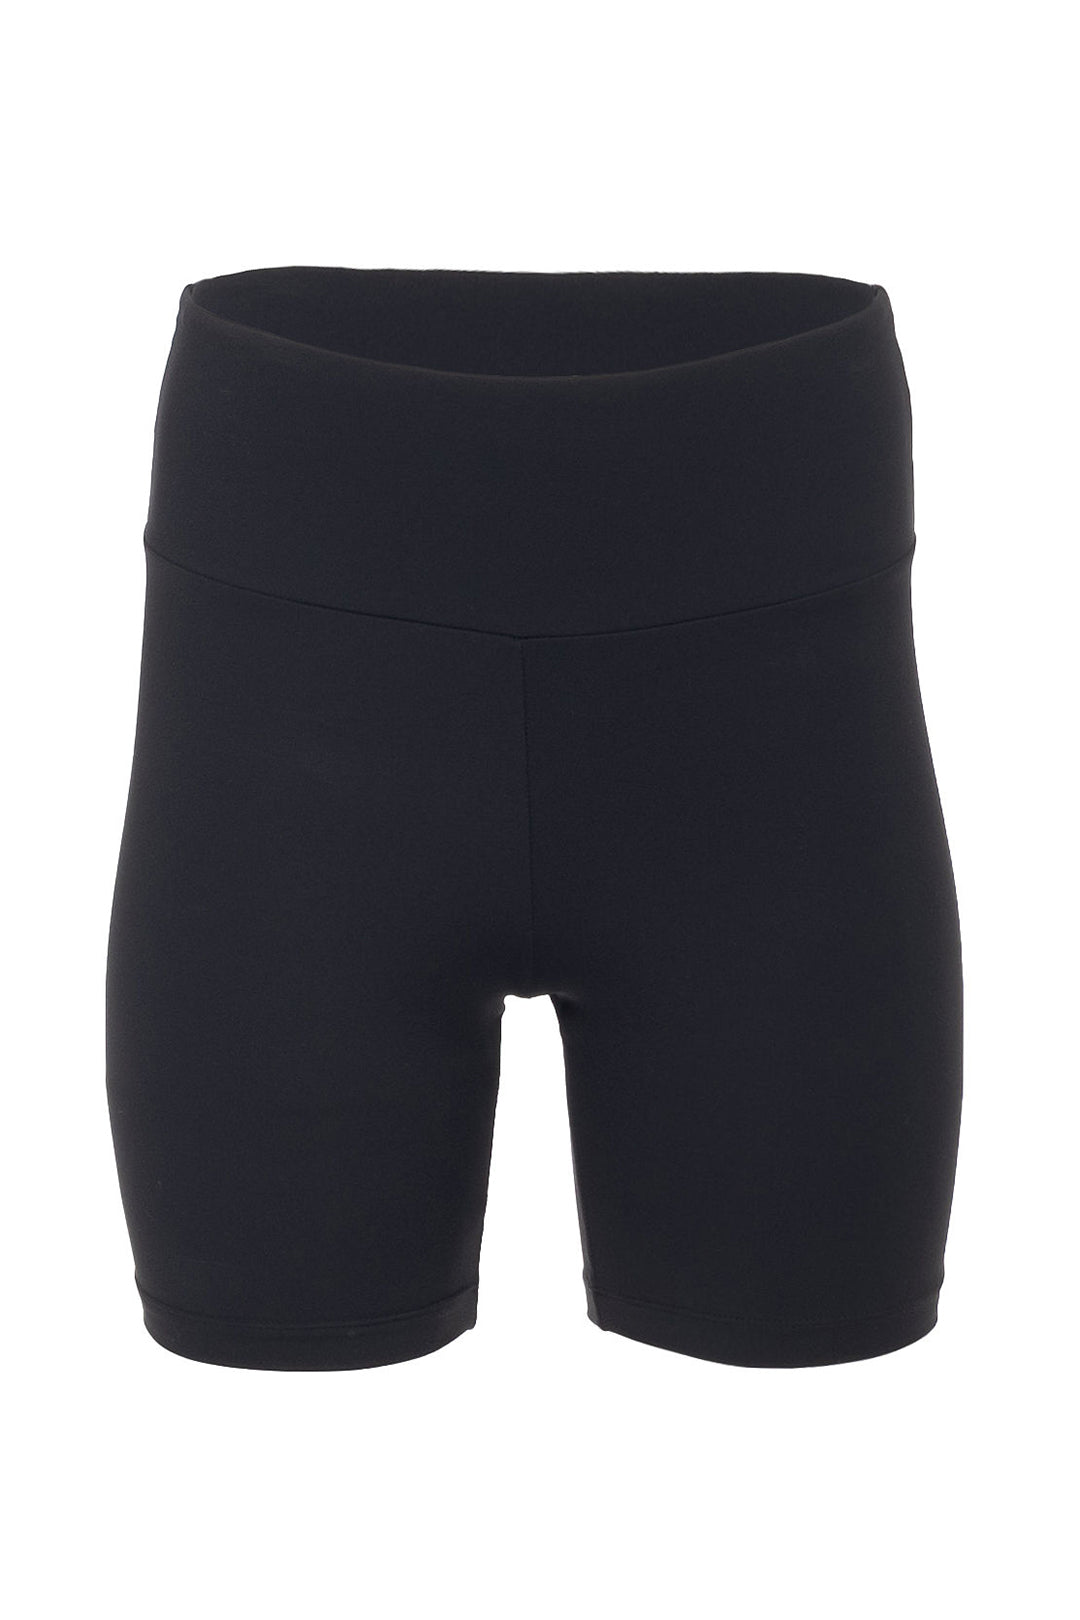 Black bib shorts | Charles